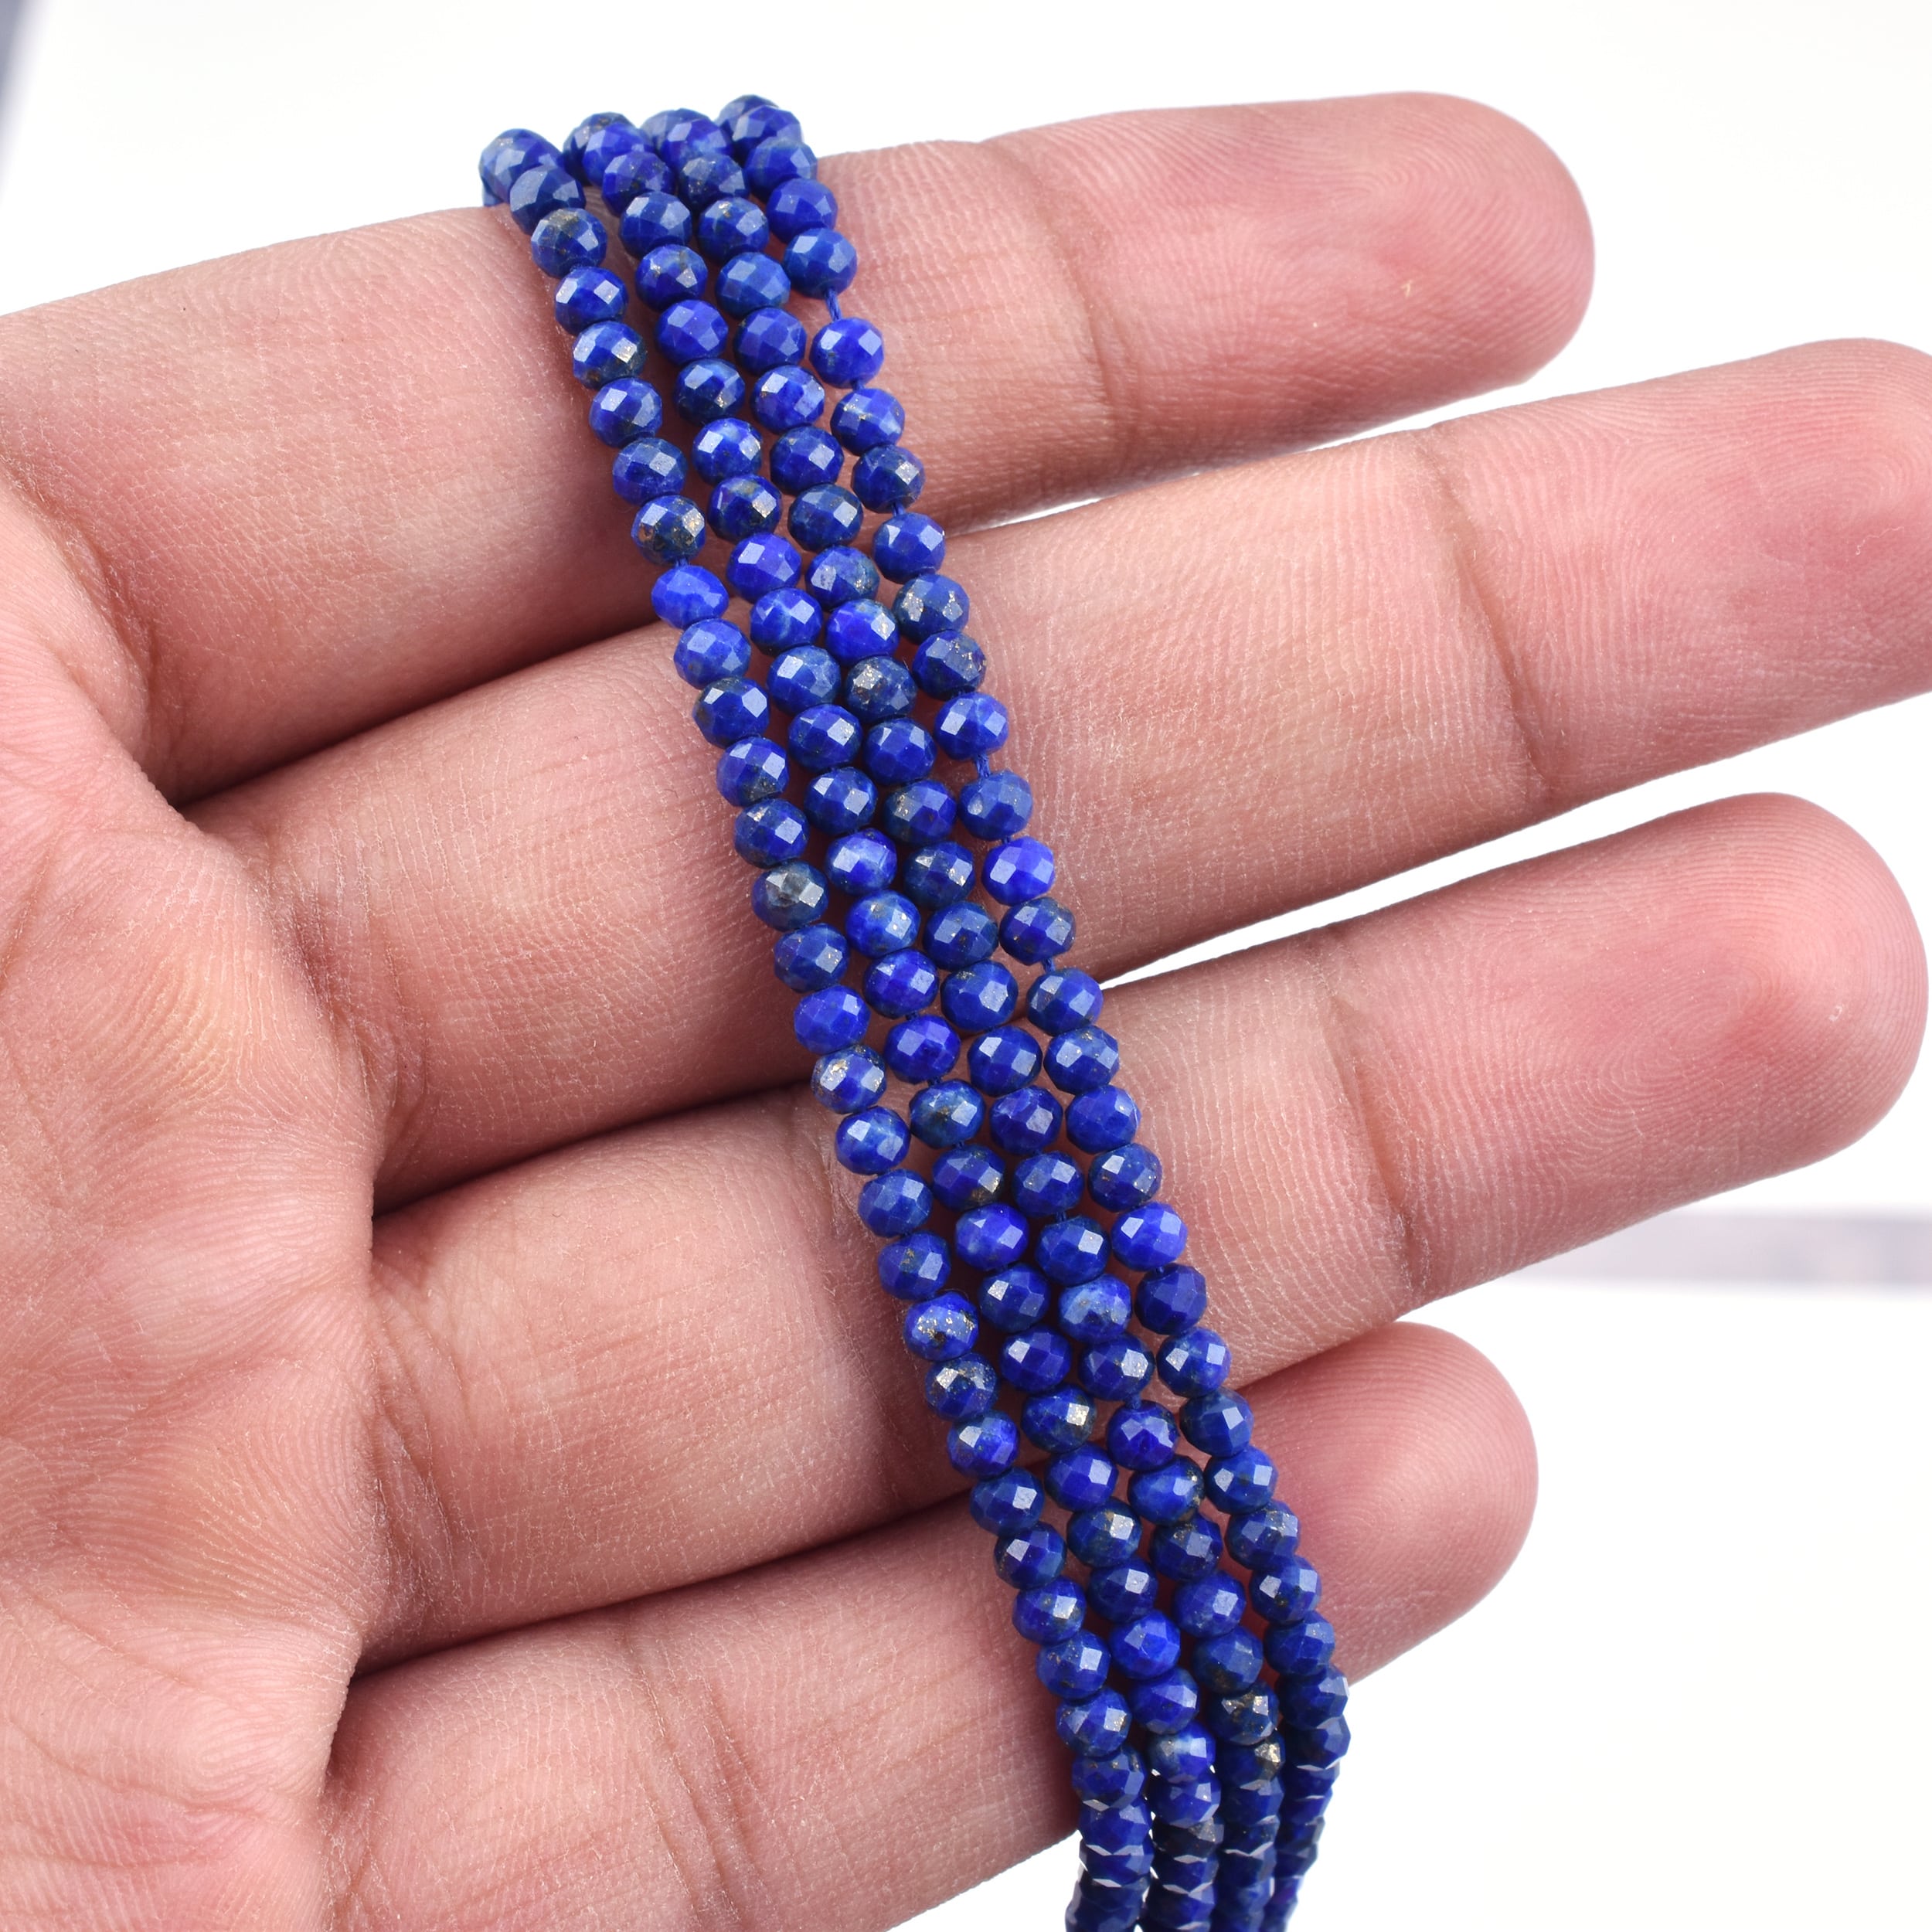 10x14mm Blue Lapis Lazuli Stone Fashion Jewlery Making Loose Beads Strand 15" 